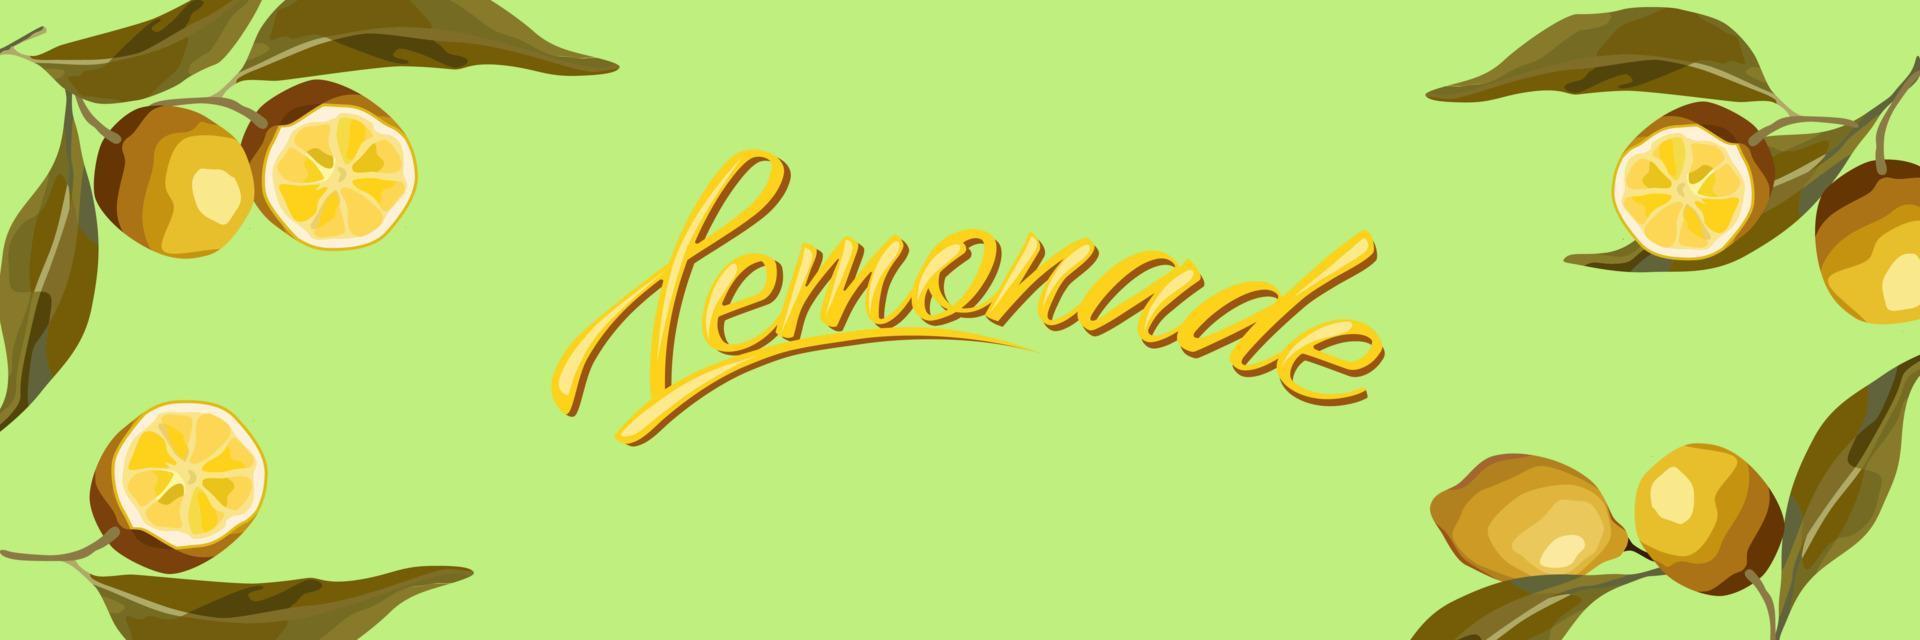 Lemon branches. For the lemonade label, summer design, fresh design. vector